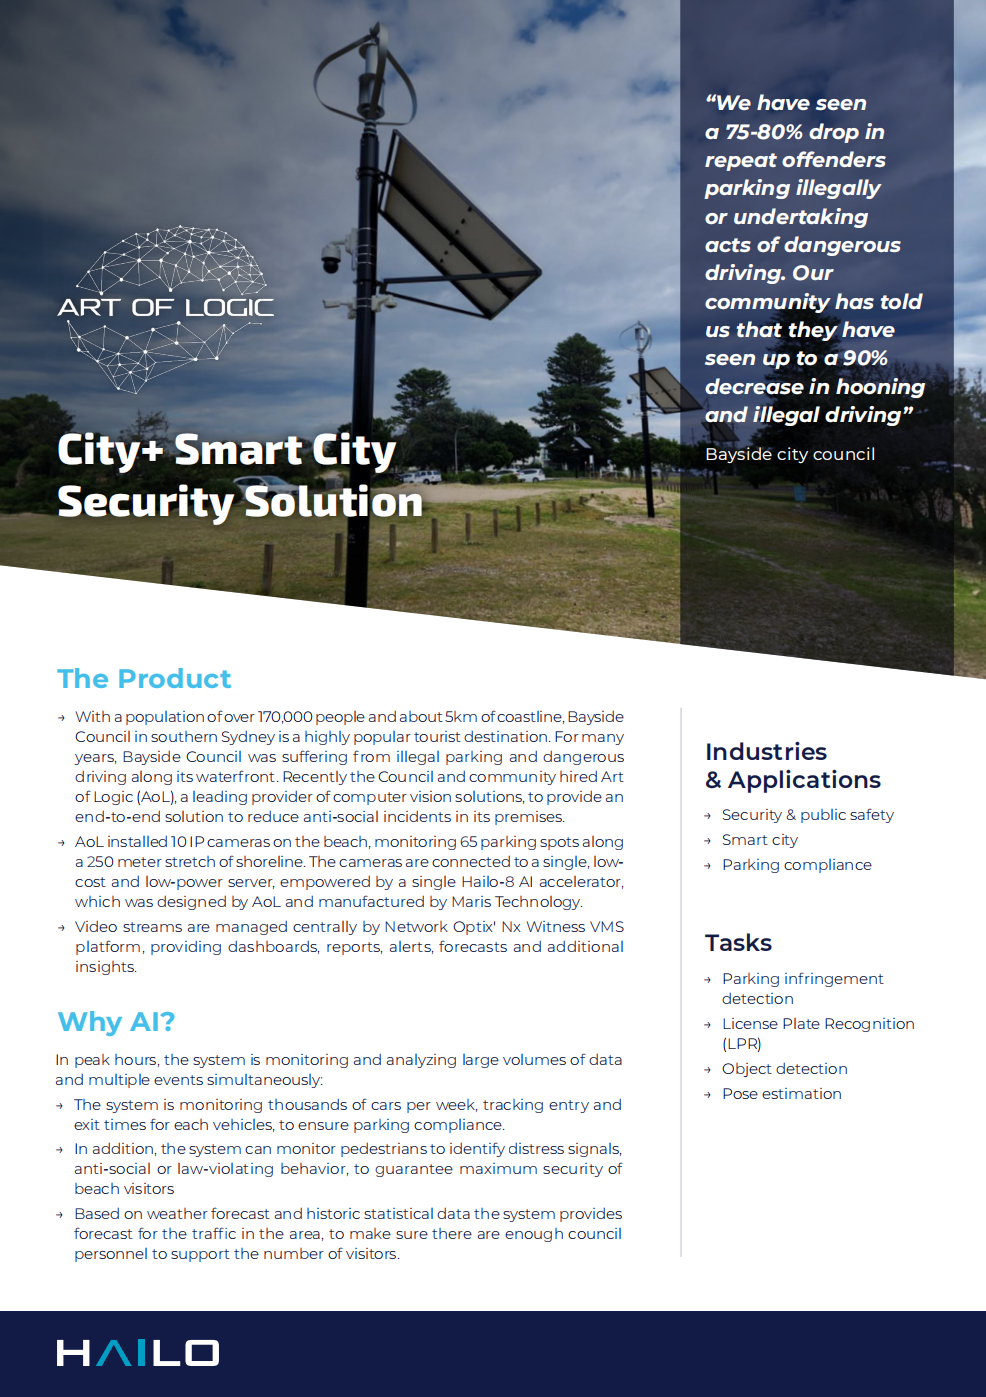 City+智慧城市安全解决方案